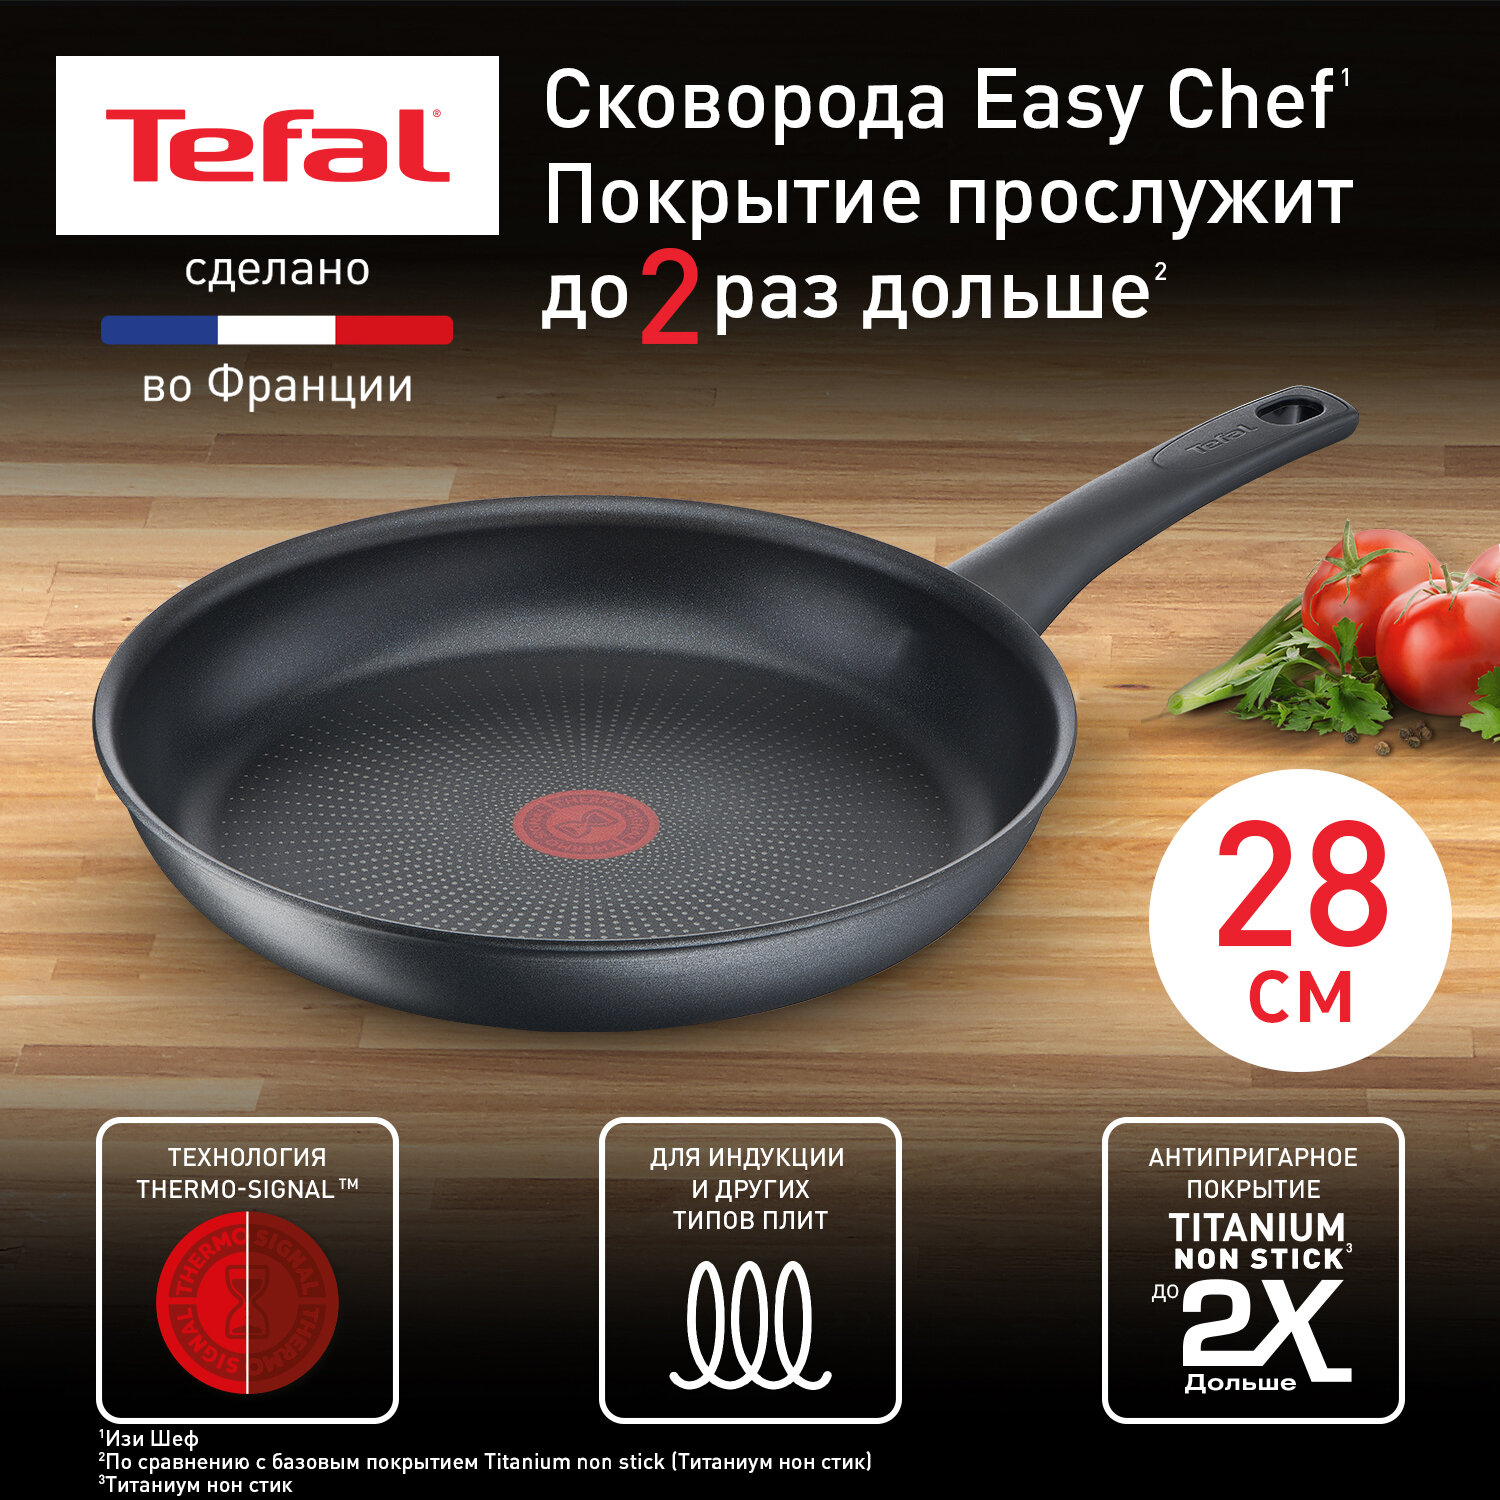 Сковорода Tefal Easy Chef G2700672, диаметр 28 см, с индикатором температуры, с антипригарным покрытием, для газовых, электрических и индукционных плит, сделано во Франции